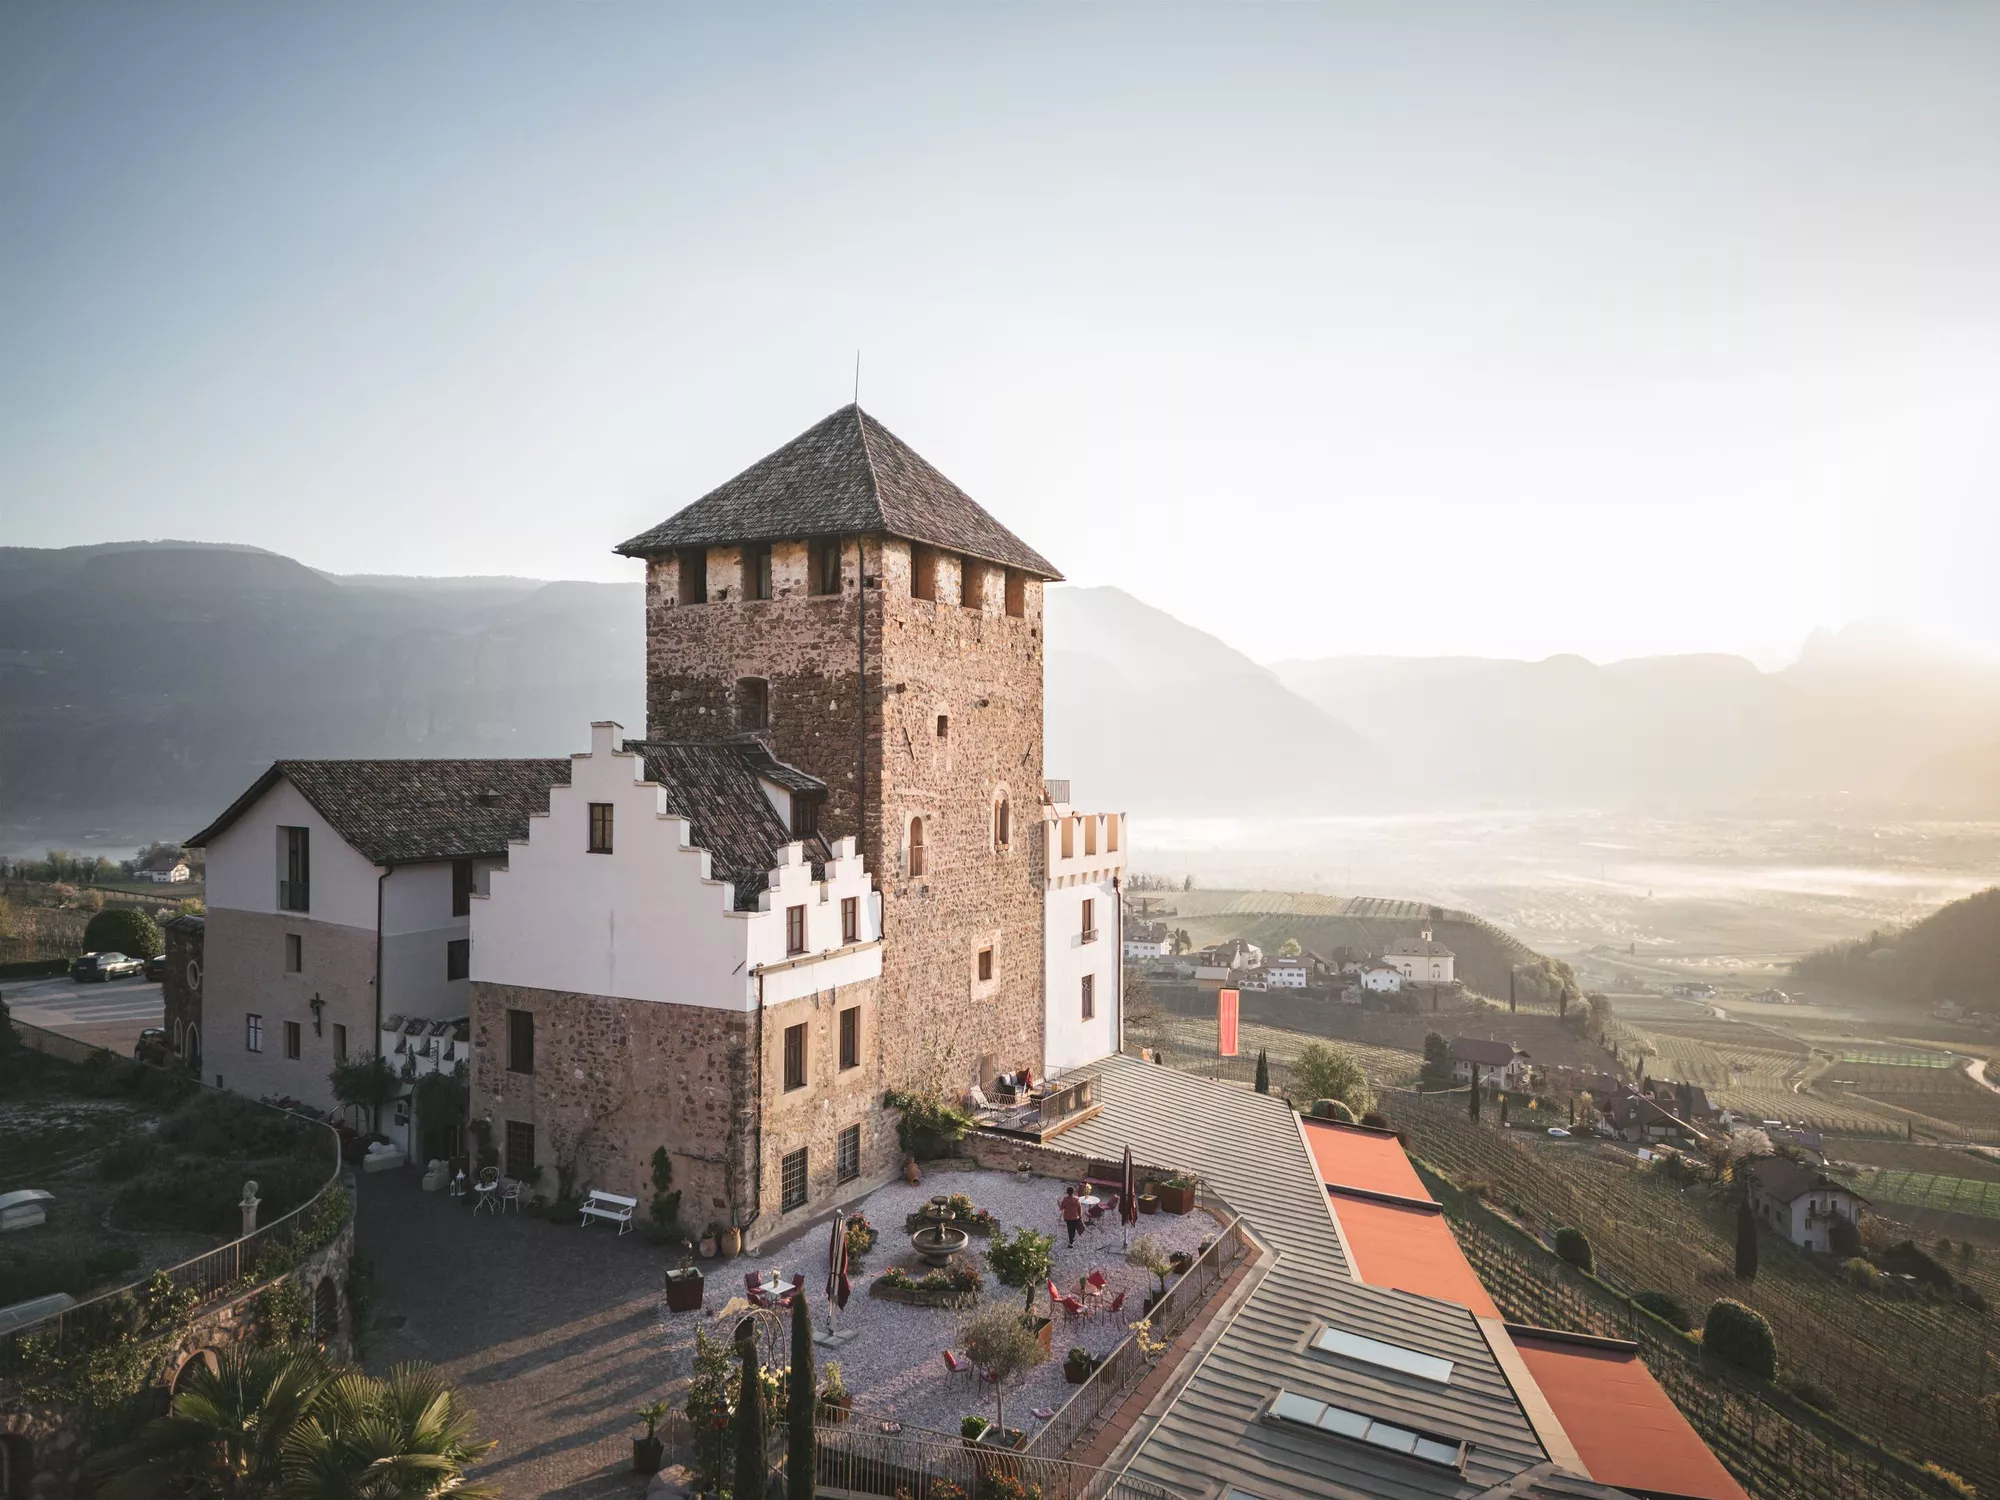 Blick auf das Schloss Hotel Korb in Eppan, Südtirol und die ihm zu Füßen liegende Landschaft (c) Foto Koni Studios